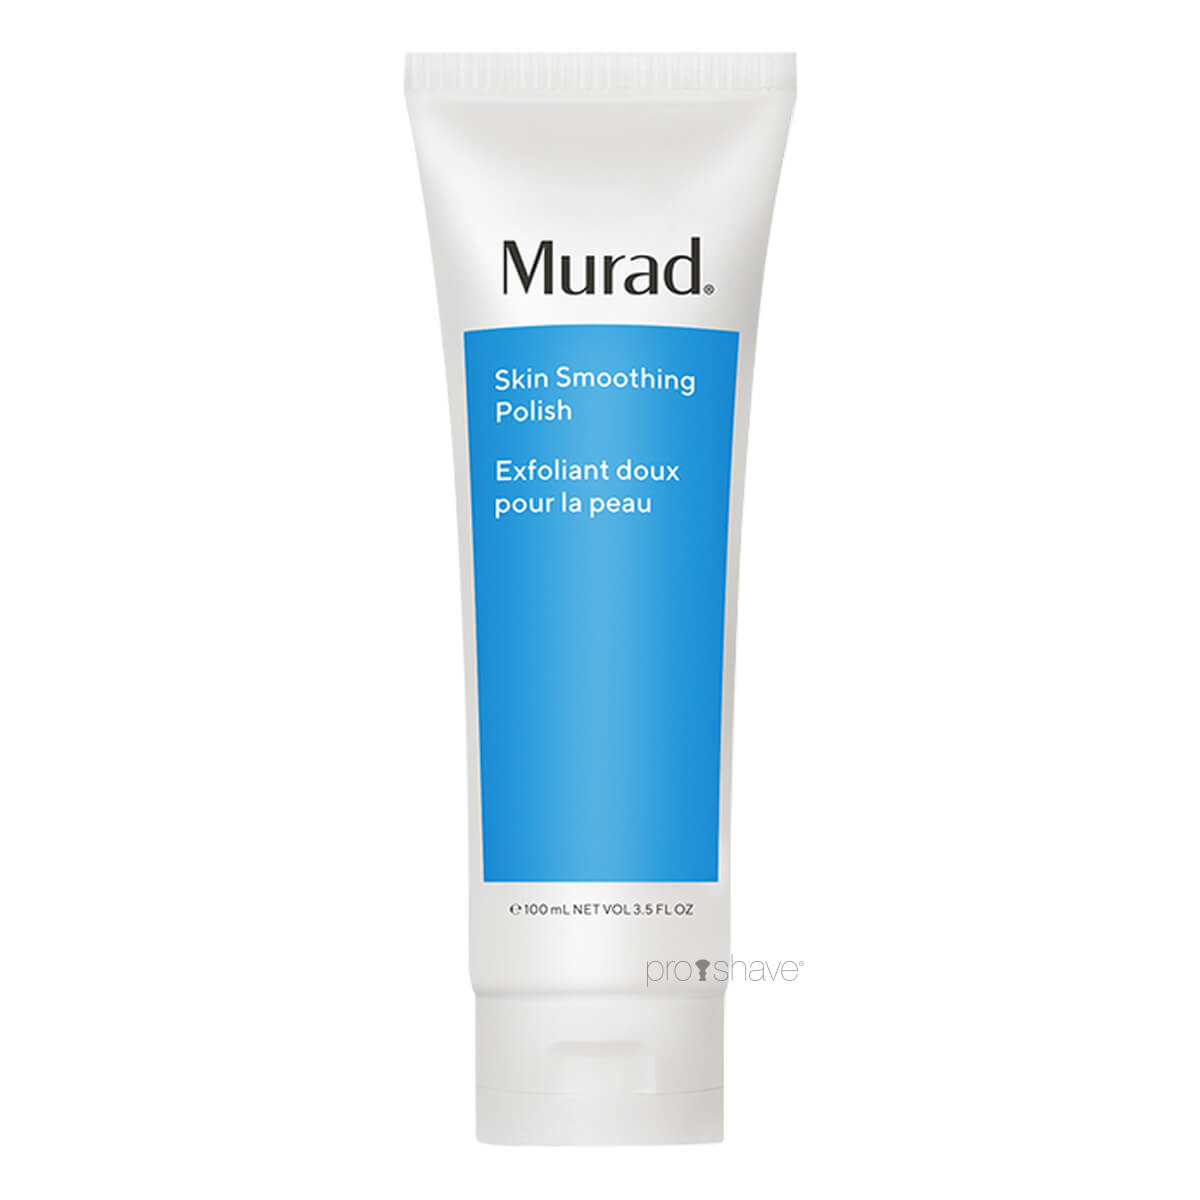 Se Murad Skin Smoothing Polish, Blemish Control, 100 ml. hos Proshave